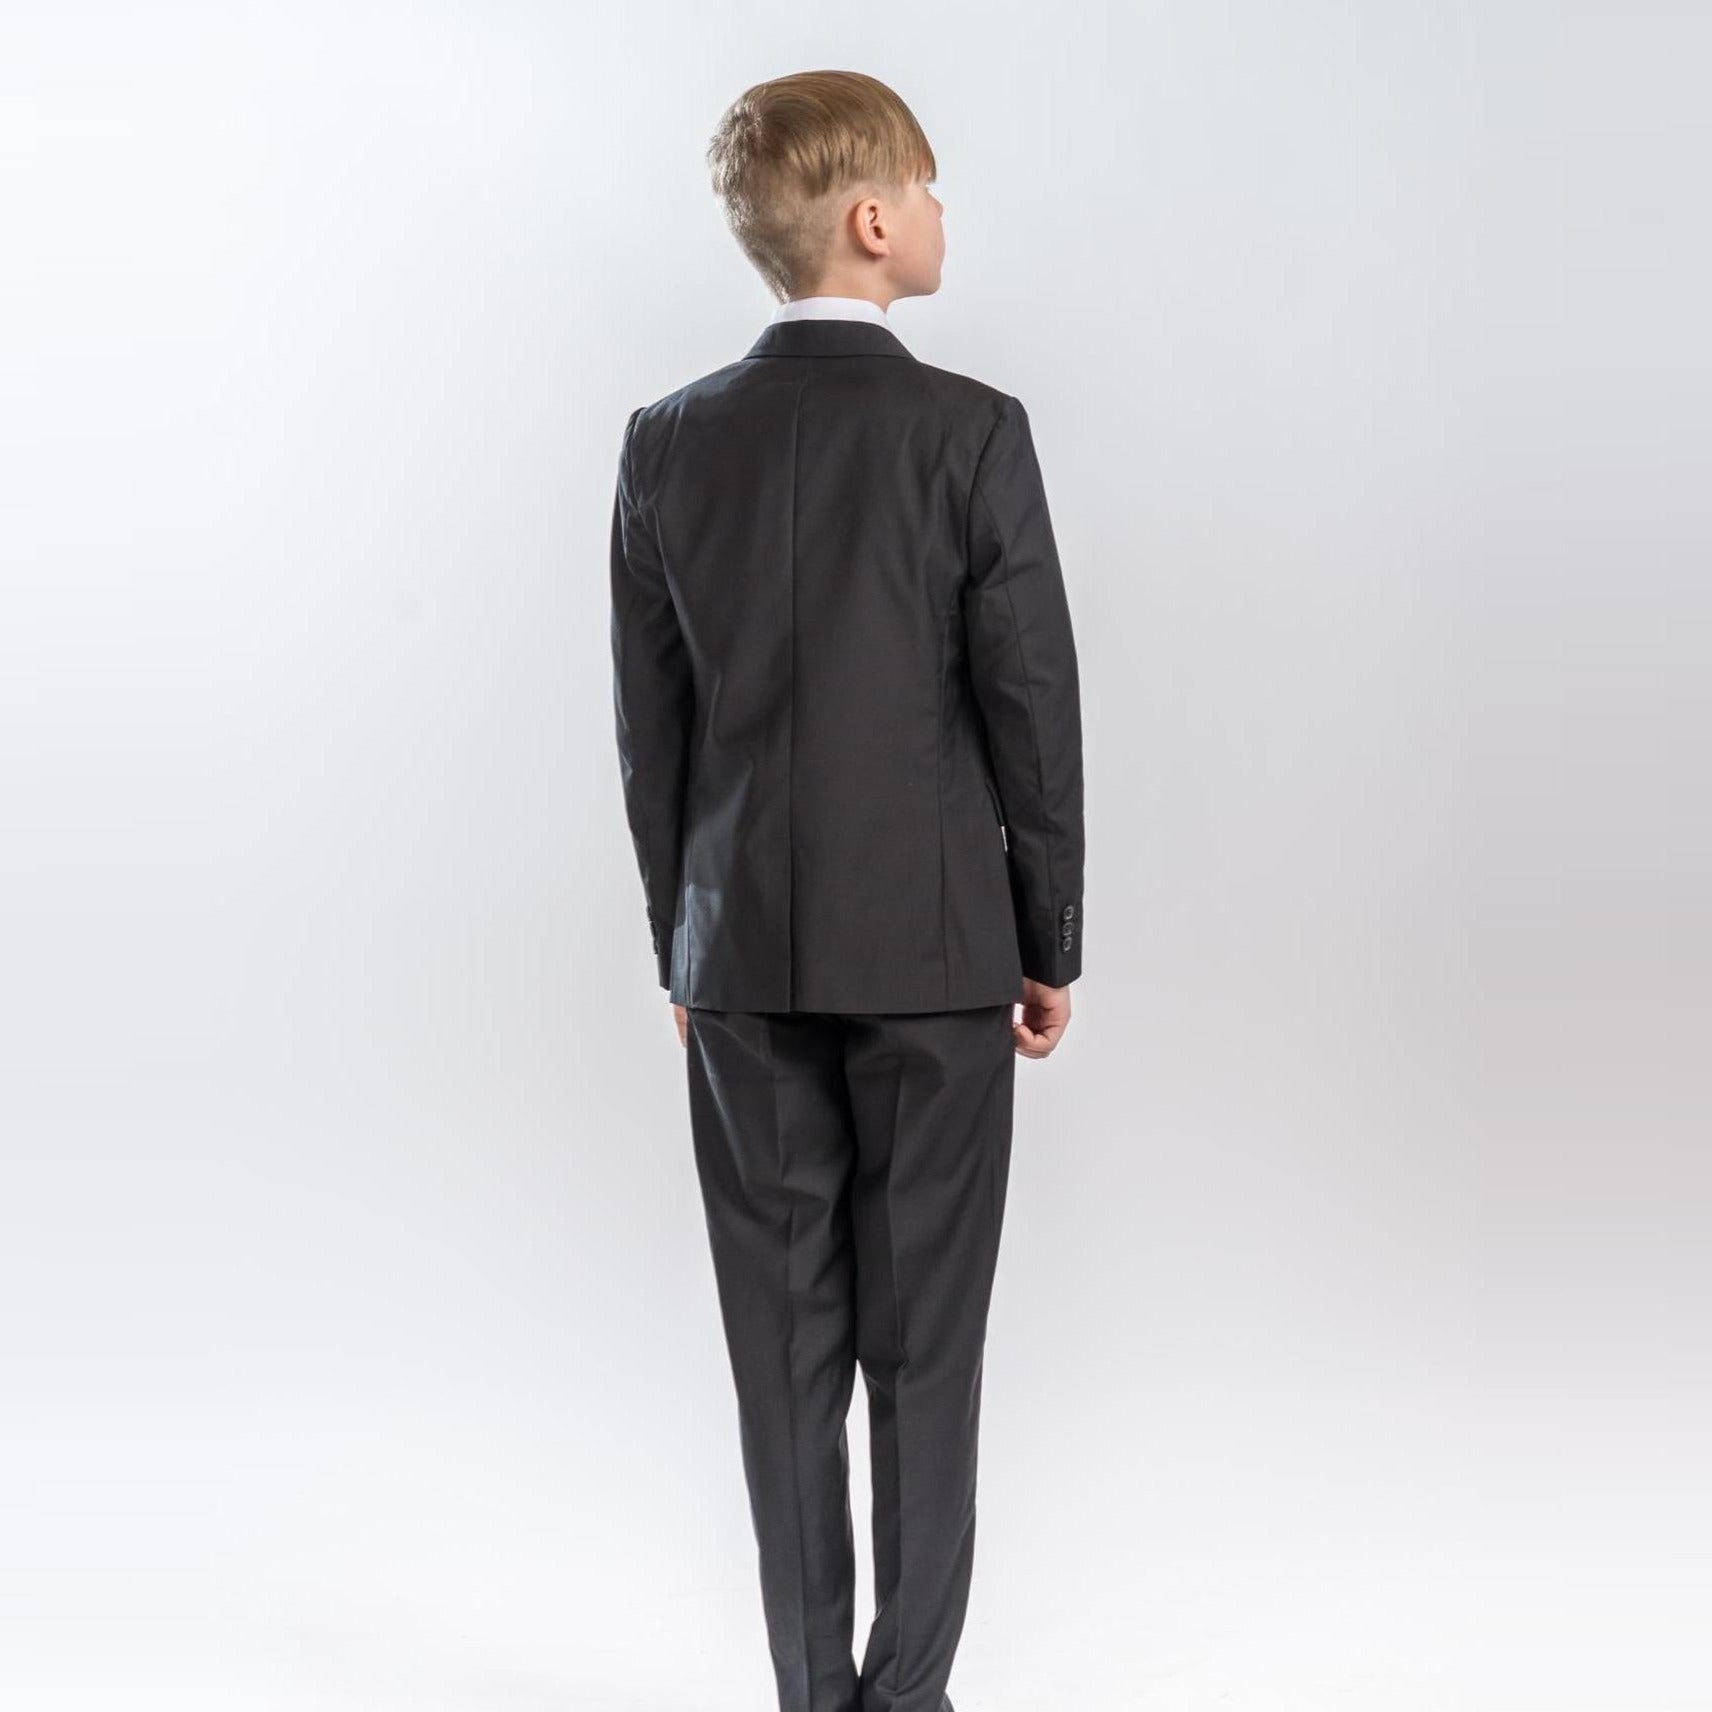 The Classic Suit Formal Boys Suit